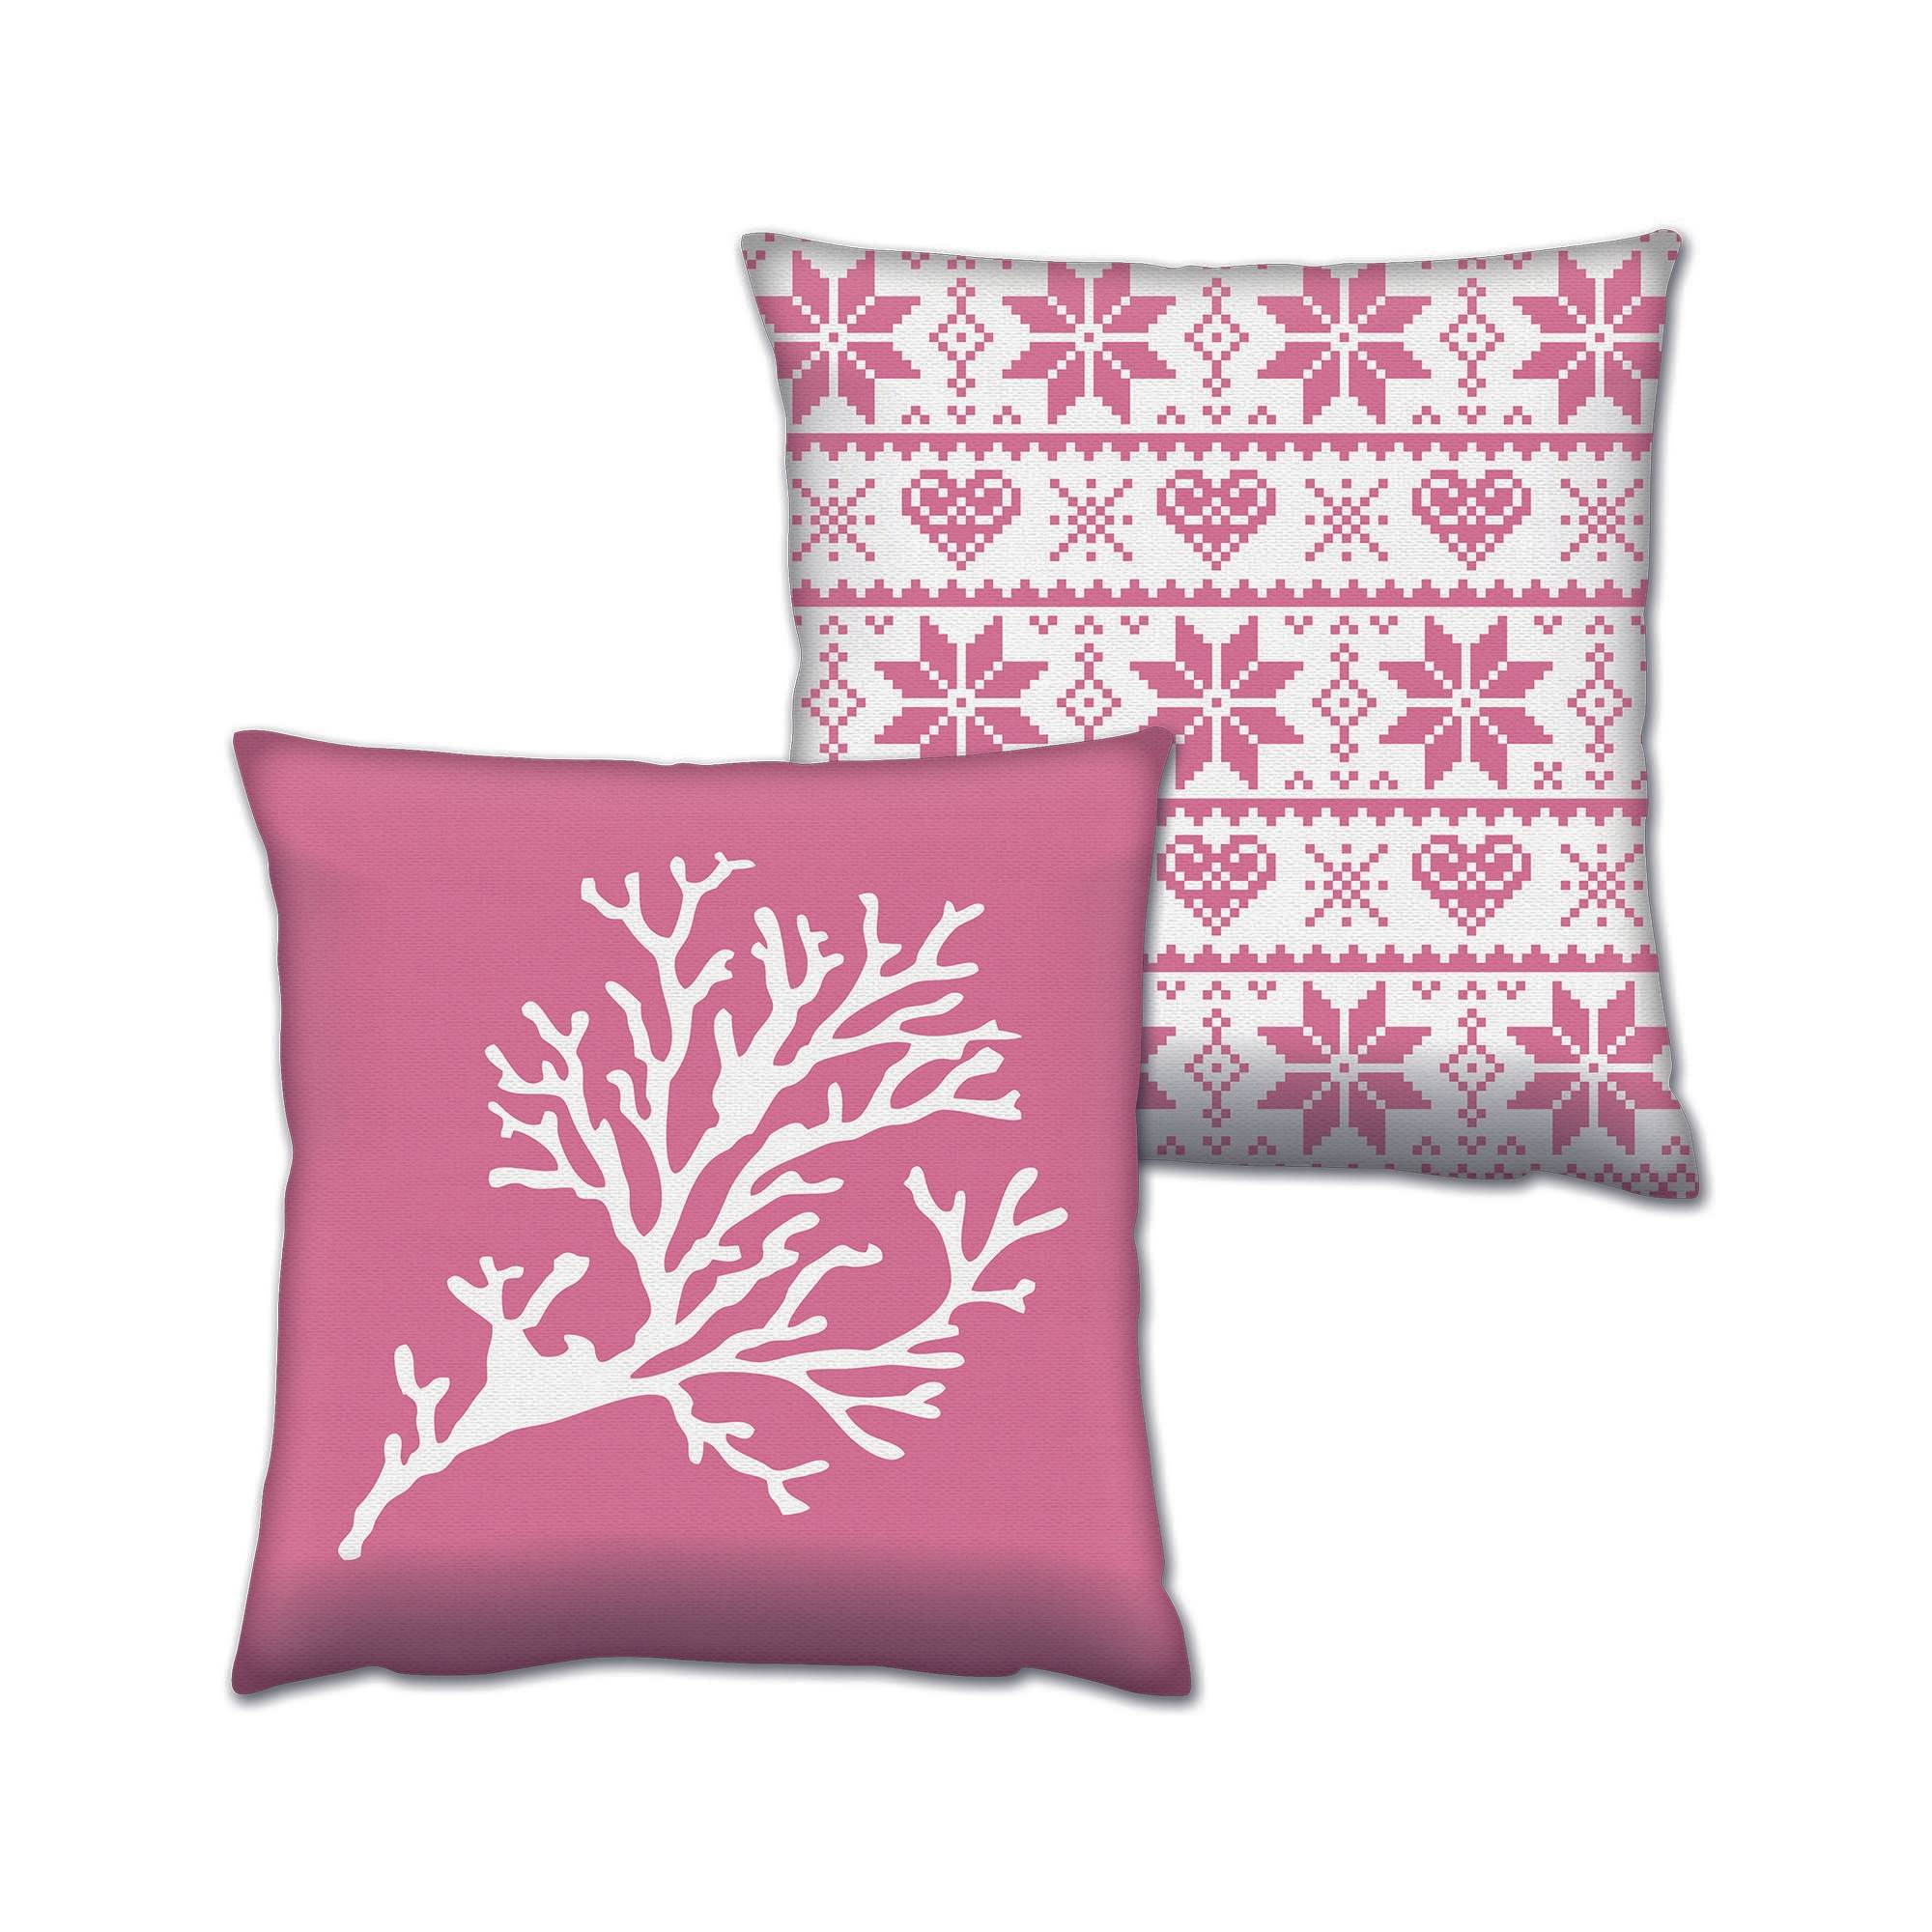 Set bestehend aus 2 passenden Kissen Decorare Winter 43 x 43 cm Baumwolle Polyester Magenta-Rosa